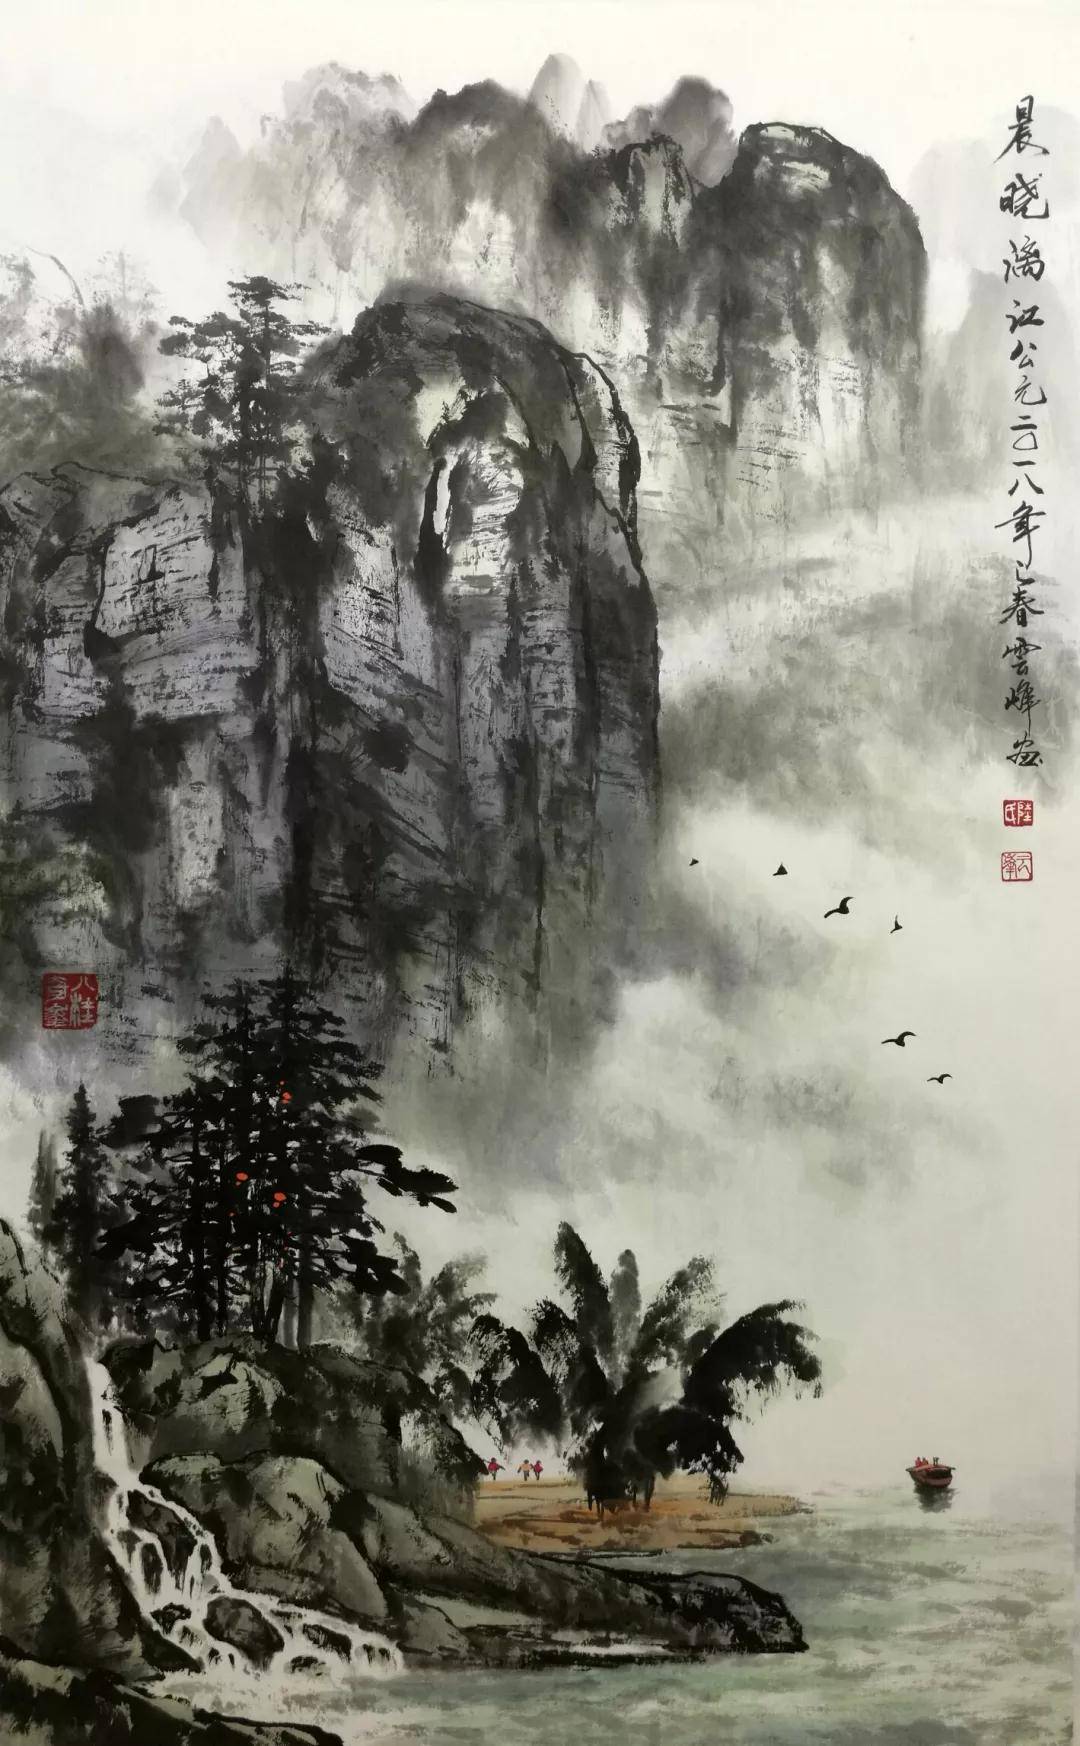 艺术推荐|中国新一代杰出艺术家陆云峰 